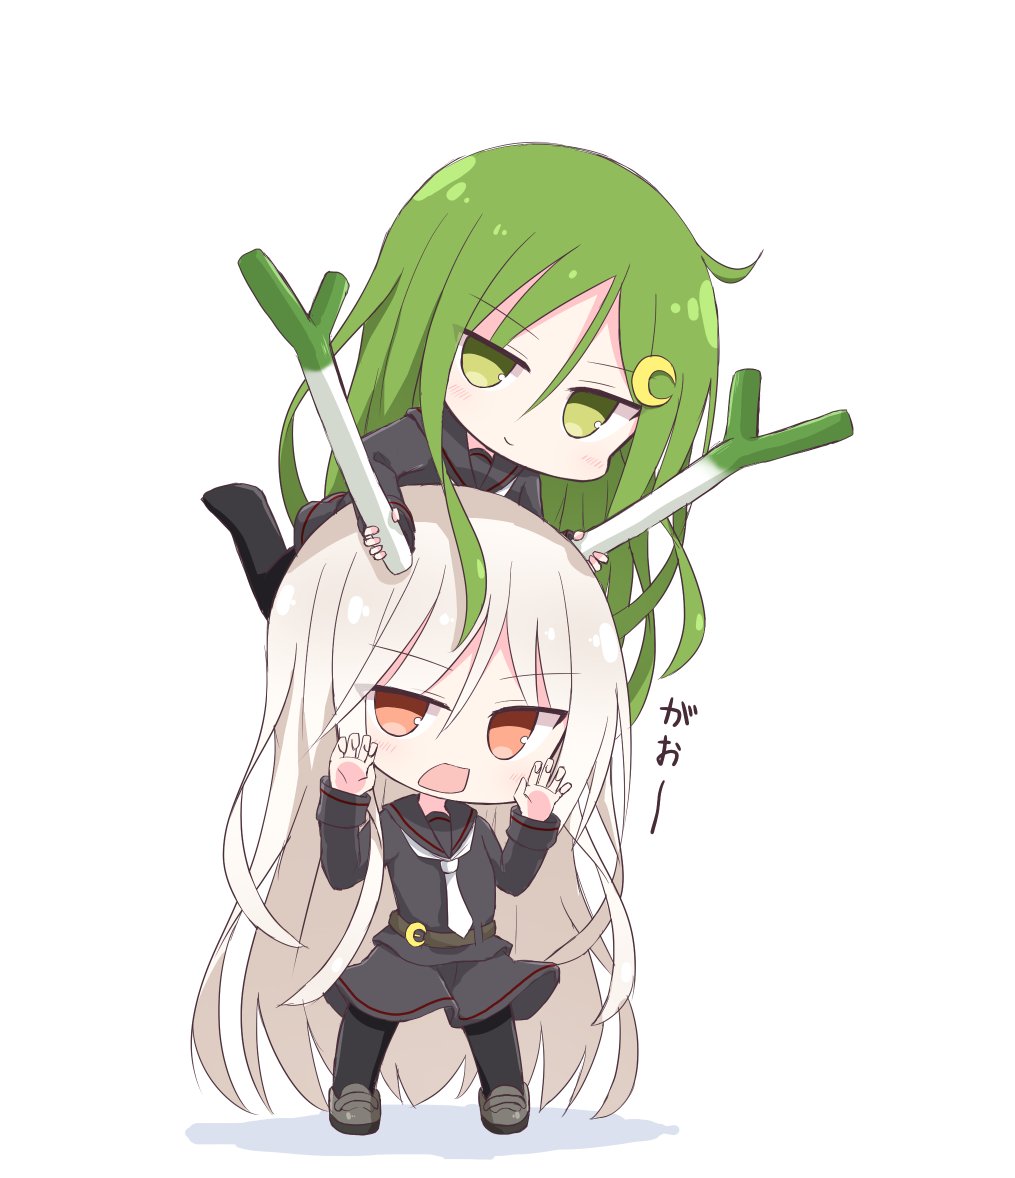 kikuzuki (kancolle) ,nagatsuki (kancolle) 2girls multiple girls long hair school uniform serafuku black serafuku green hair  illustration images